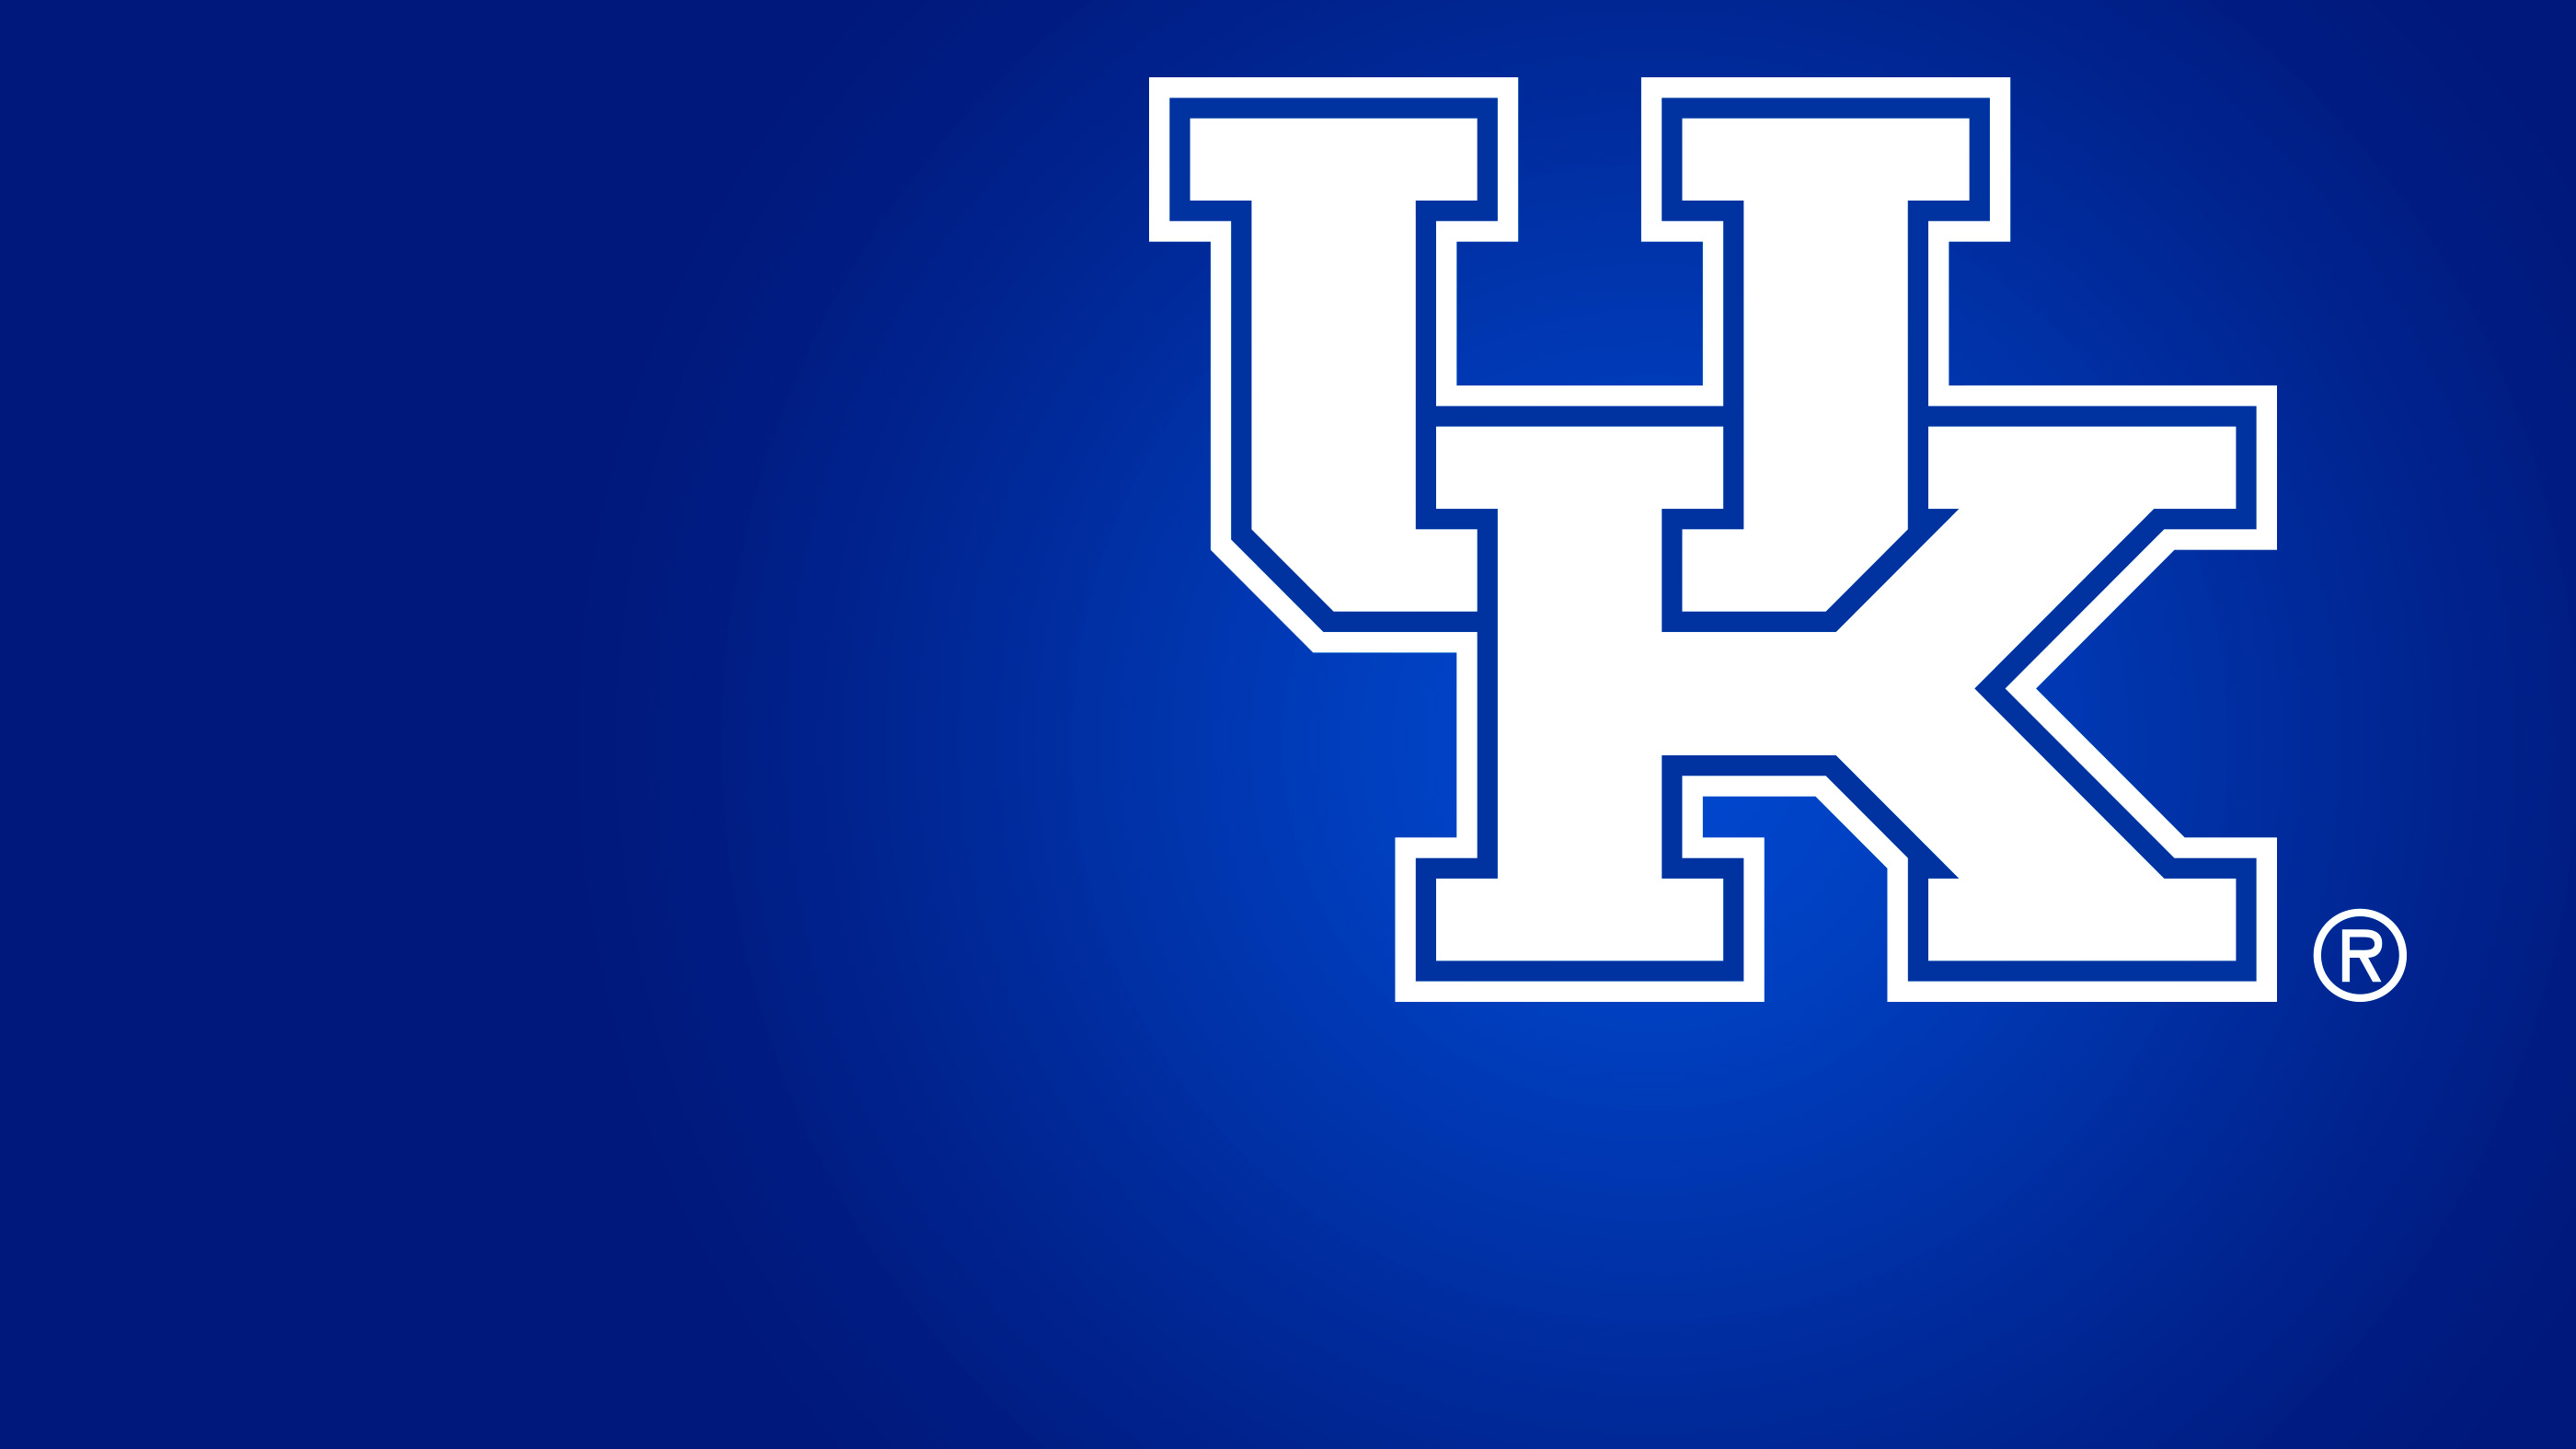 HD Kentucky Wildcats Backgrounds | PixelsTalk.Net